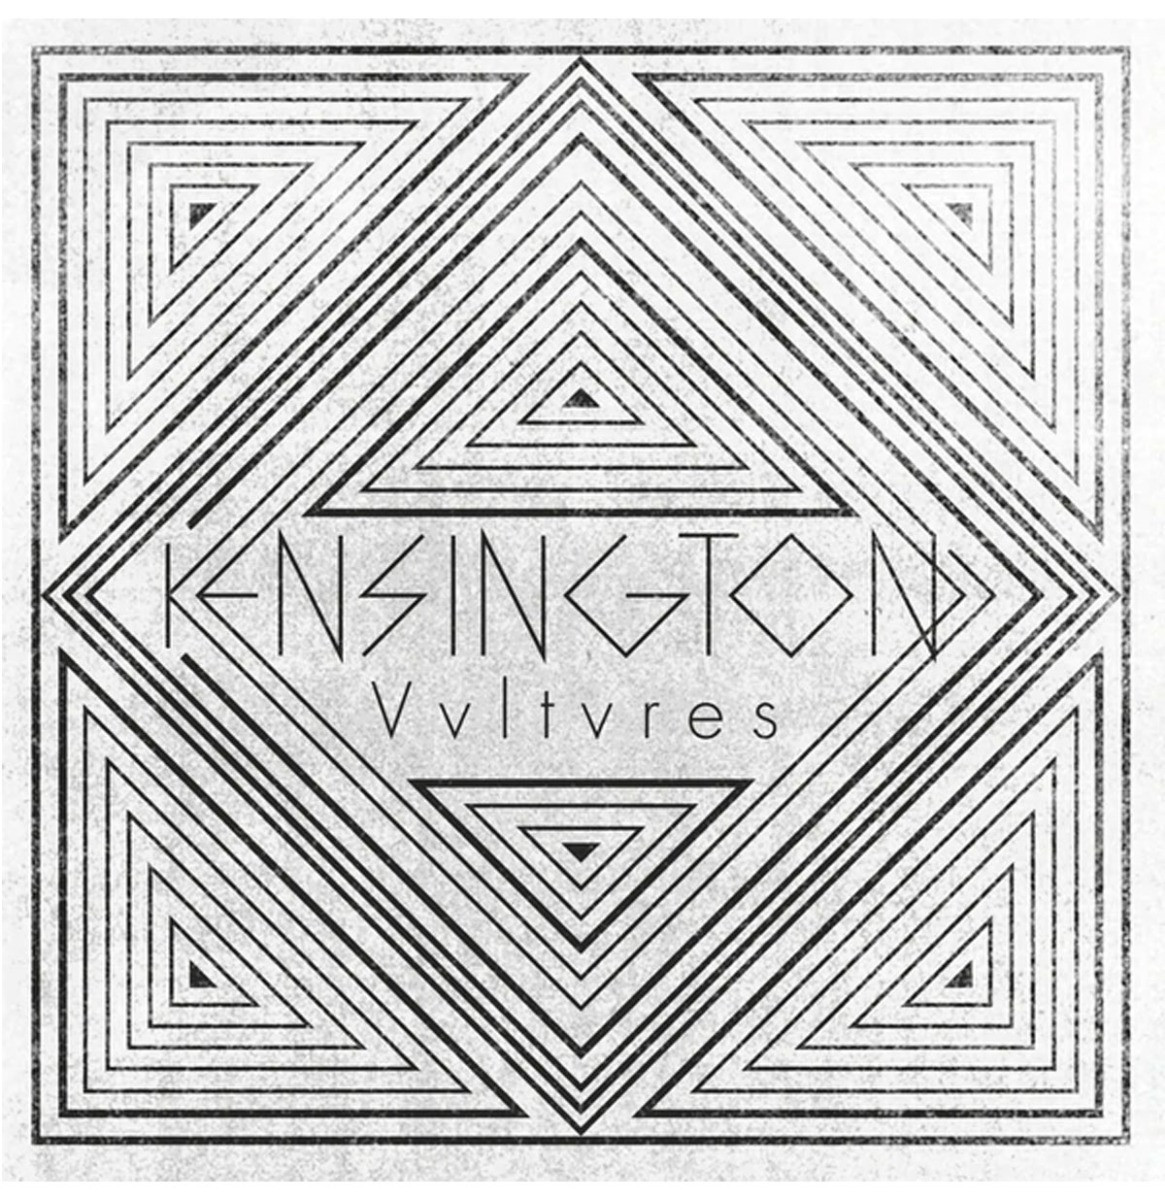 Kensington - Vultures LP